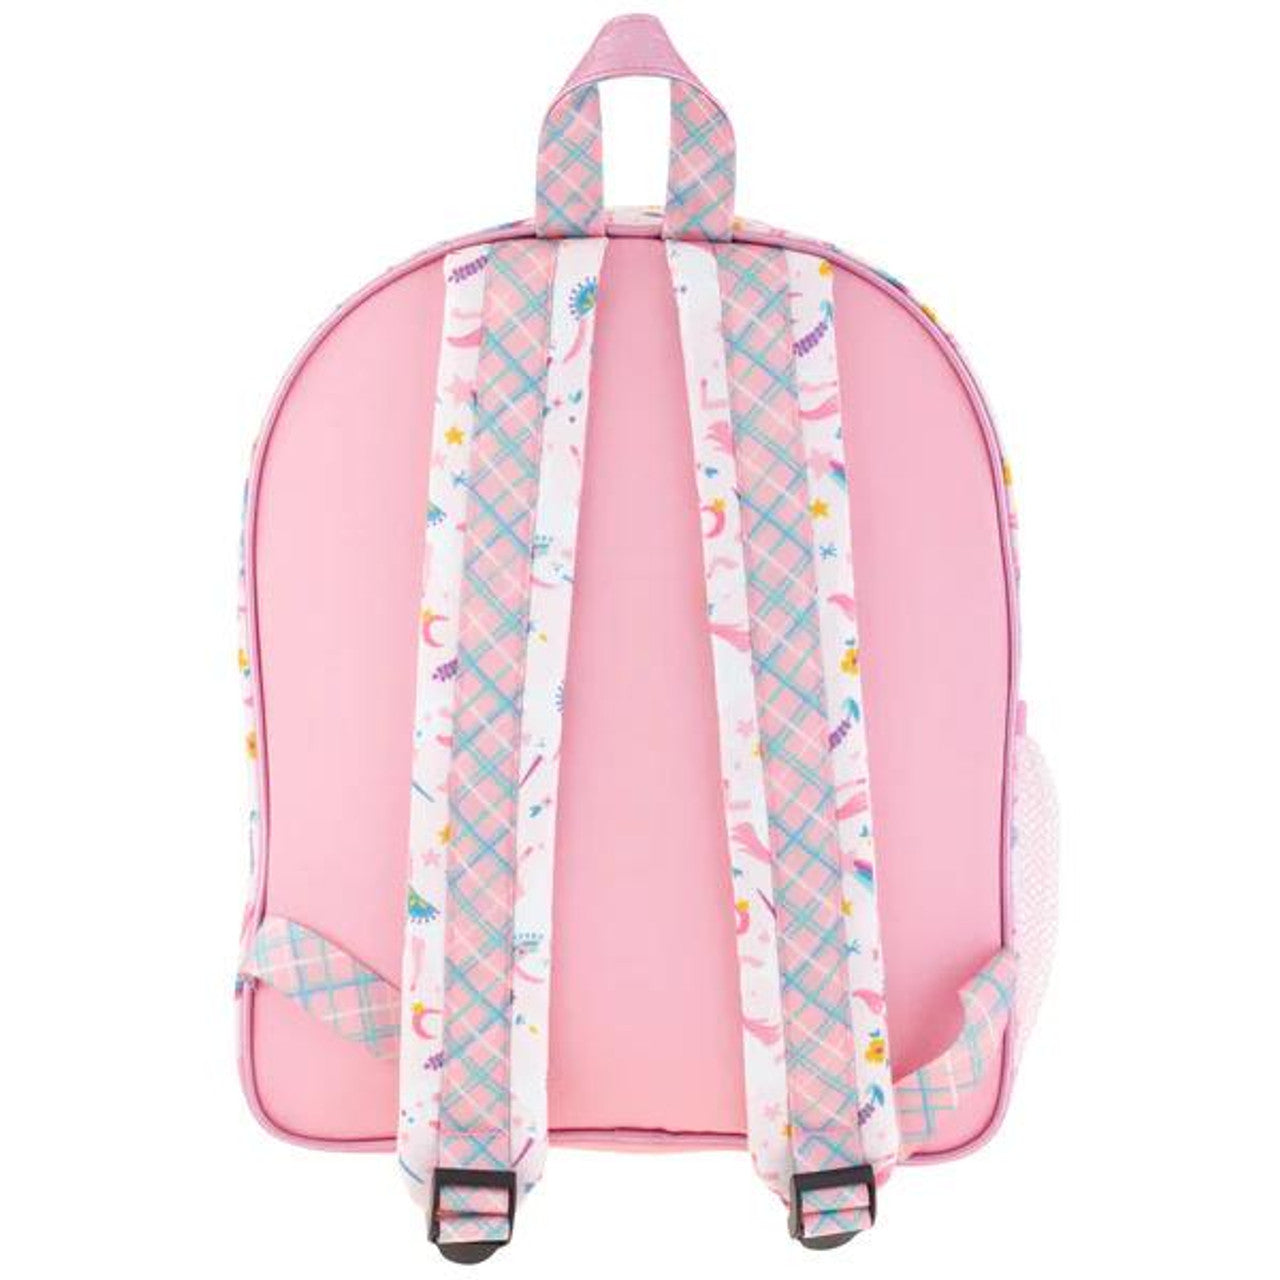 Stephen Joseph Classic Backpack for Kids - Unicorn